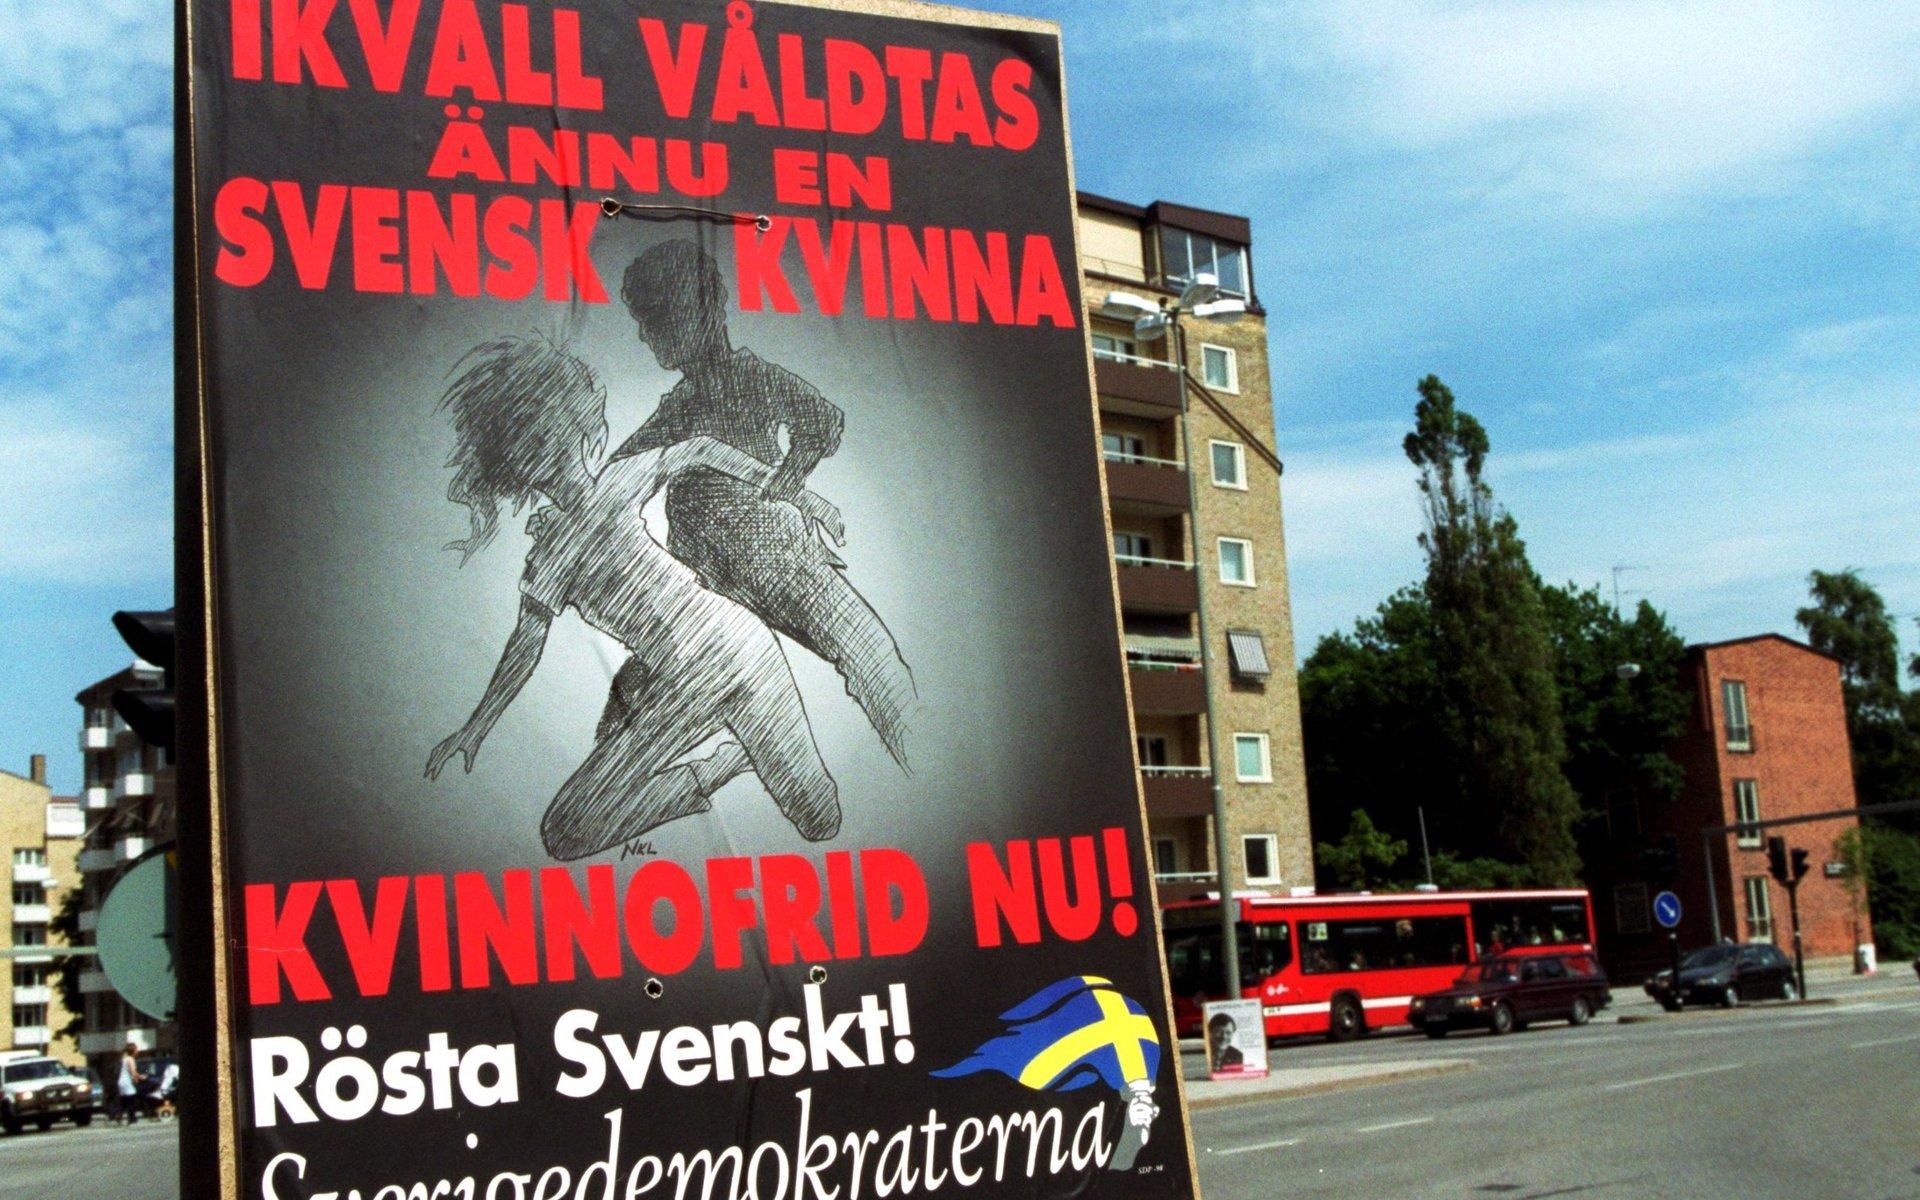 EU-valet 1999 blev en stor framgång för Sverigedemokraterna. Trots, eller tack vare, tecknade valaffischer med en ”svensk kvinna” och en mörklagd man och texten: ”I kväll våldtas ännu en svensk kvinna”.